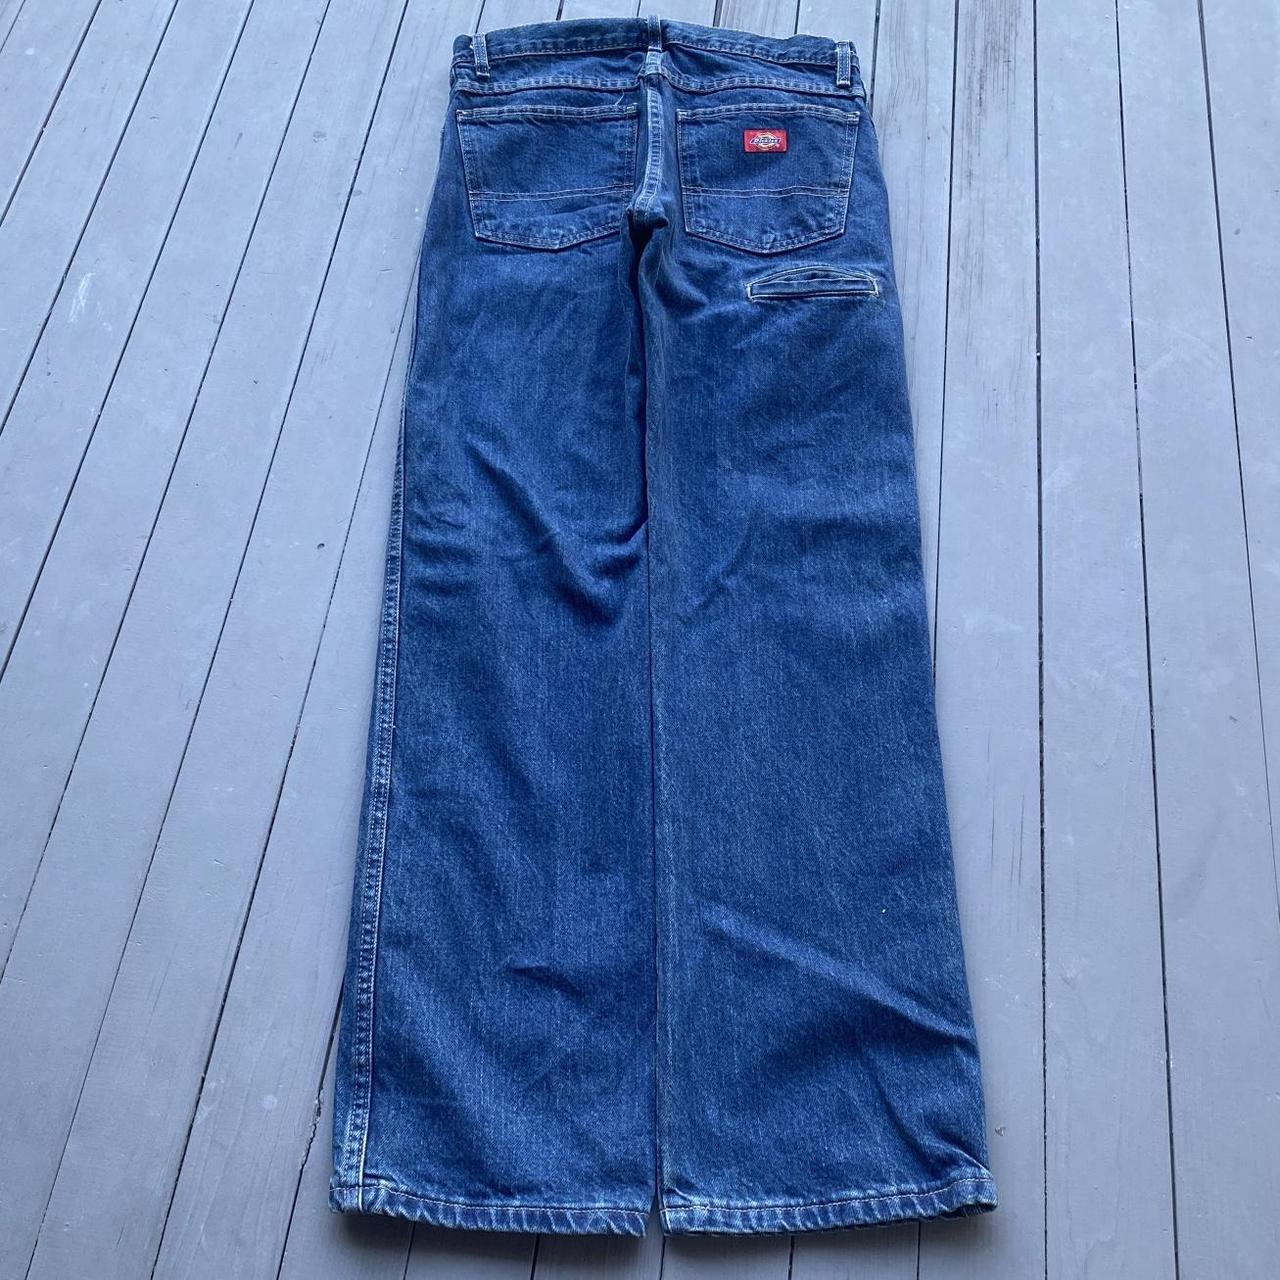 Vintage y2k baggy jeans 30x30 dickies baggy fit and... - Depop